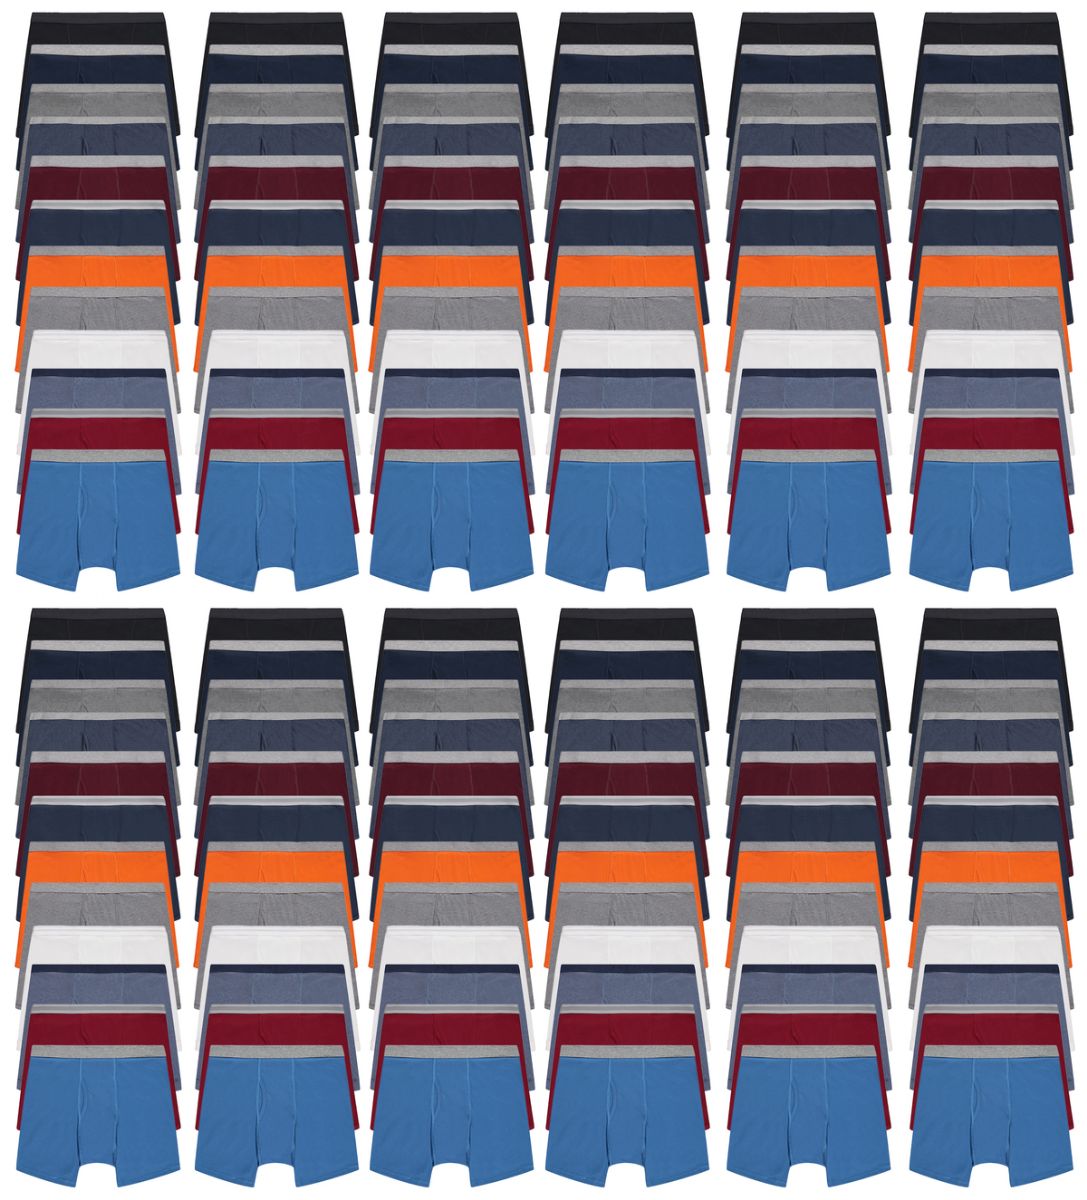 144 Wholesale Men's Cotton Underwear Boxer Briefs In Assorted Colors Size 2xlarge